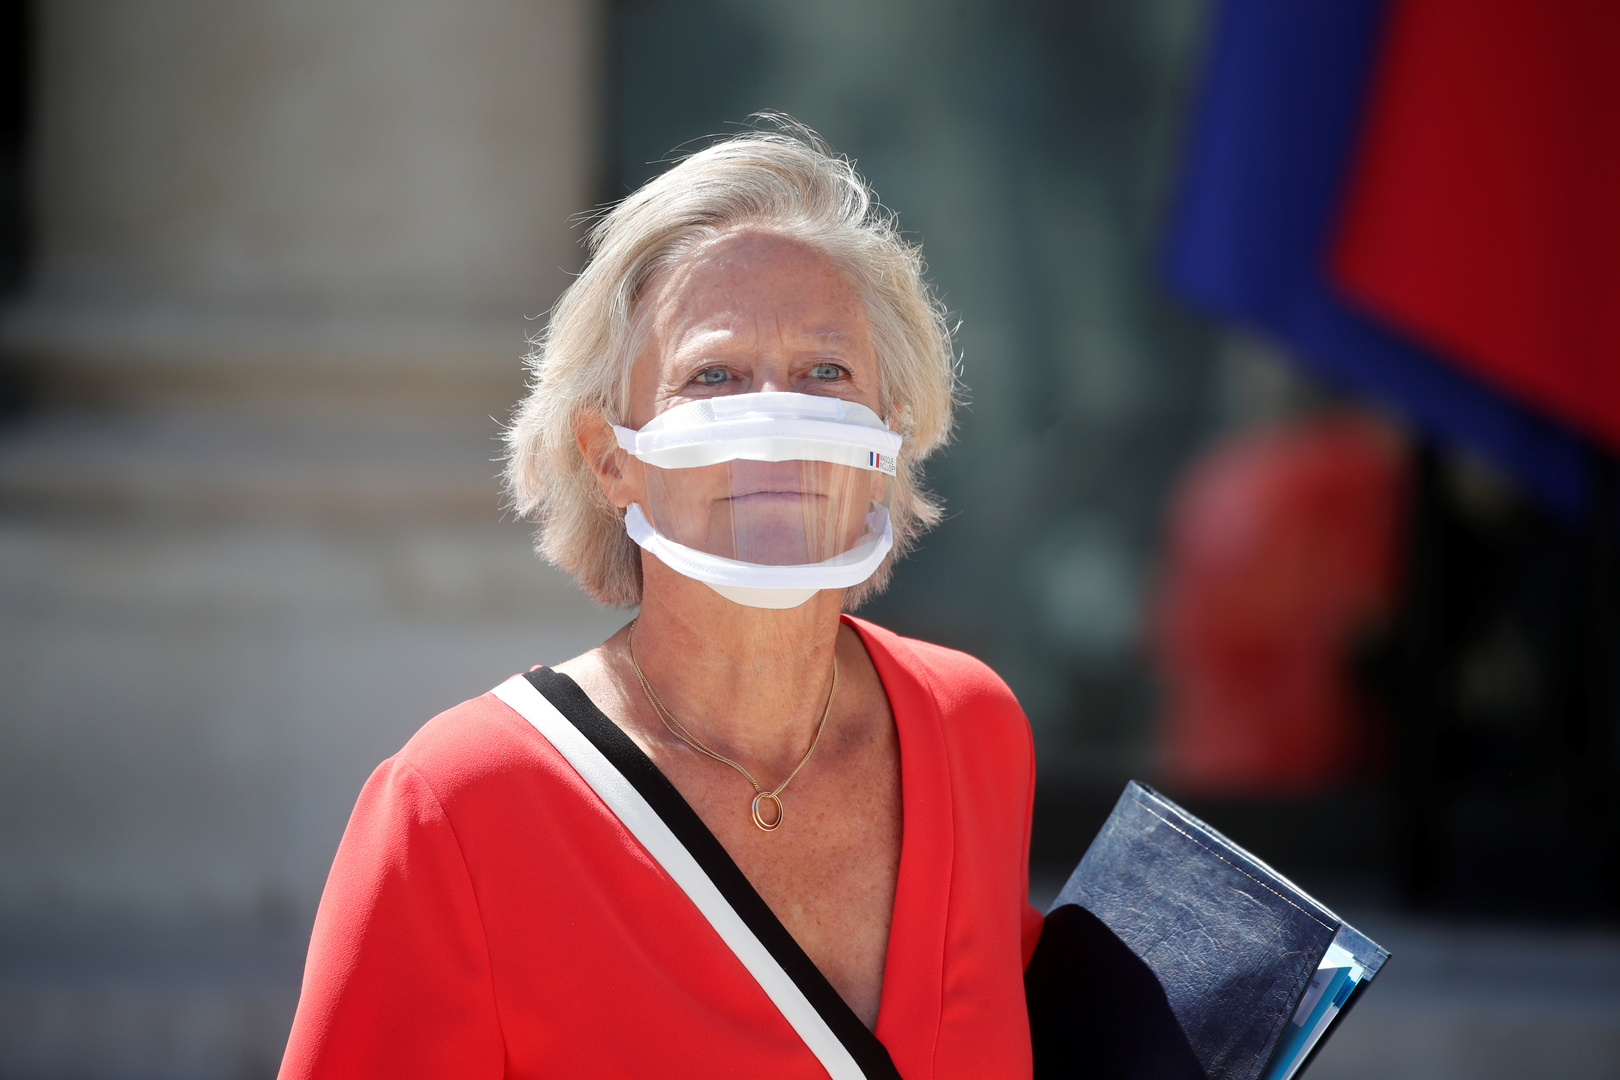 100 ألف قناع شفاف لذوي الاحتياجات الخاصة وعمال التربية في فرنسا